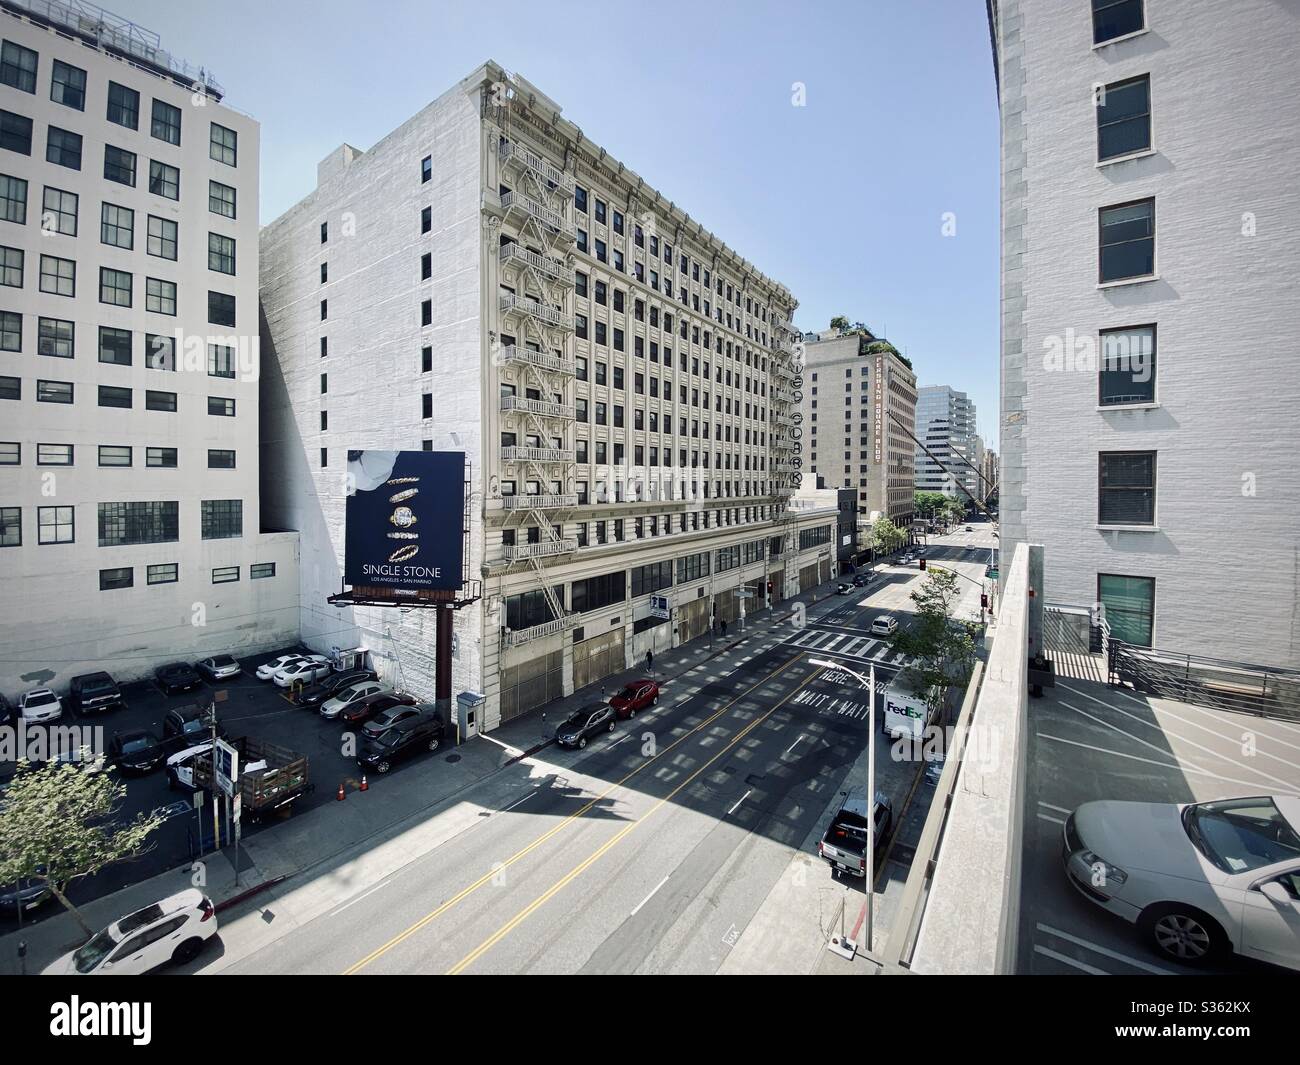 LOS ANGELES, CA, APR 2020: Weitblick auf das Hotel Clark auf der Hill St, in Downtown. Neu gestaltete Innenausstattung mit historischer Fassade, das Gebäude wurde umfangreich renoviert und wartet auf die Wiedereröffnung. Stockfoto